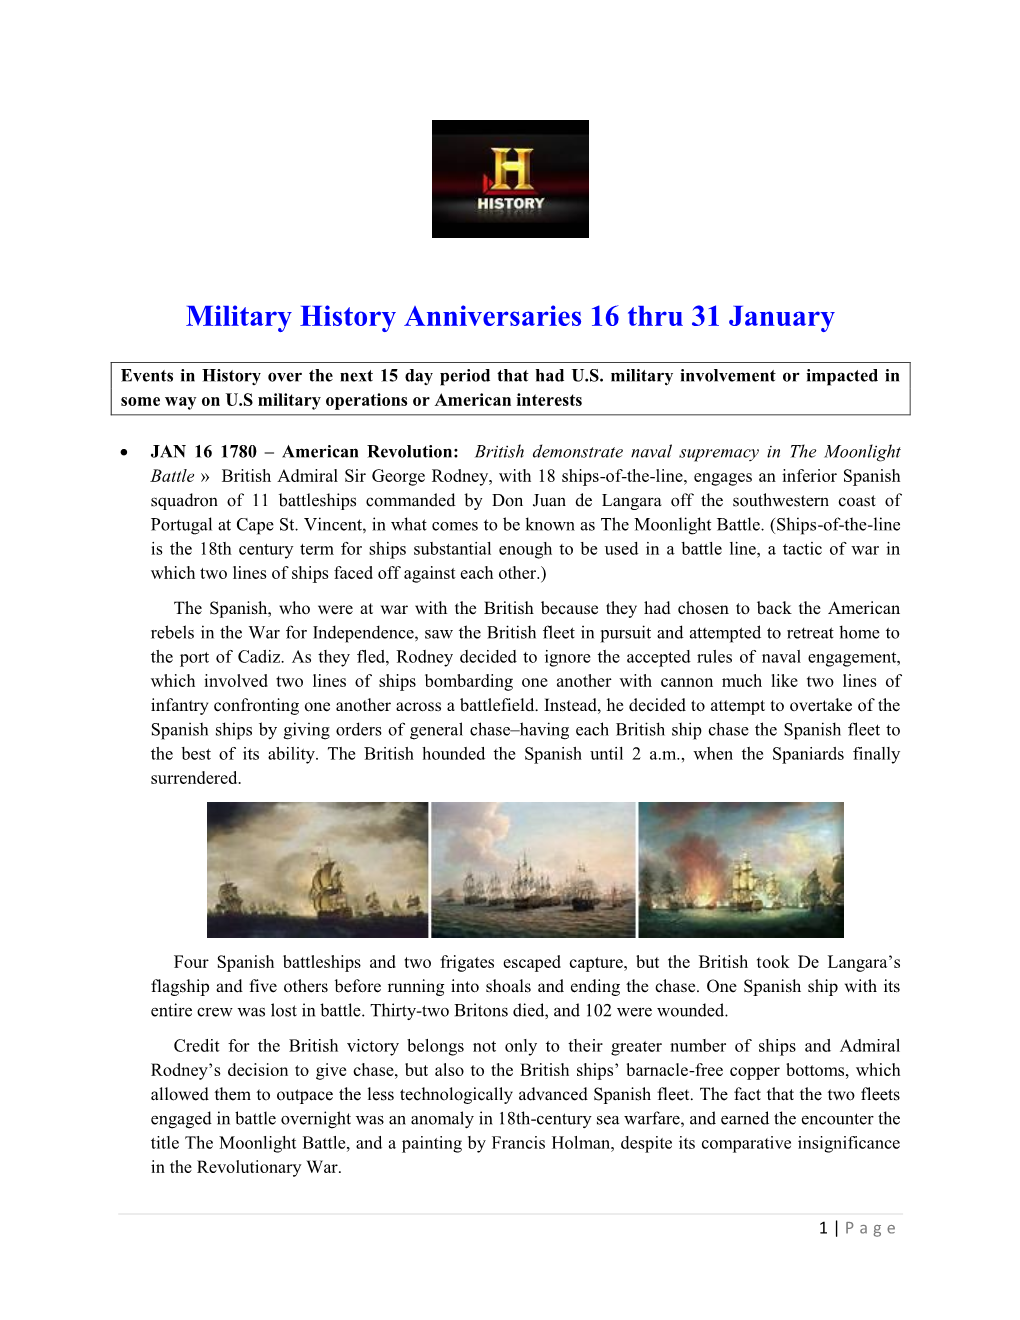 Military History Anniversaries 16 Thru 31 January